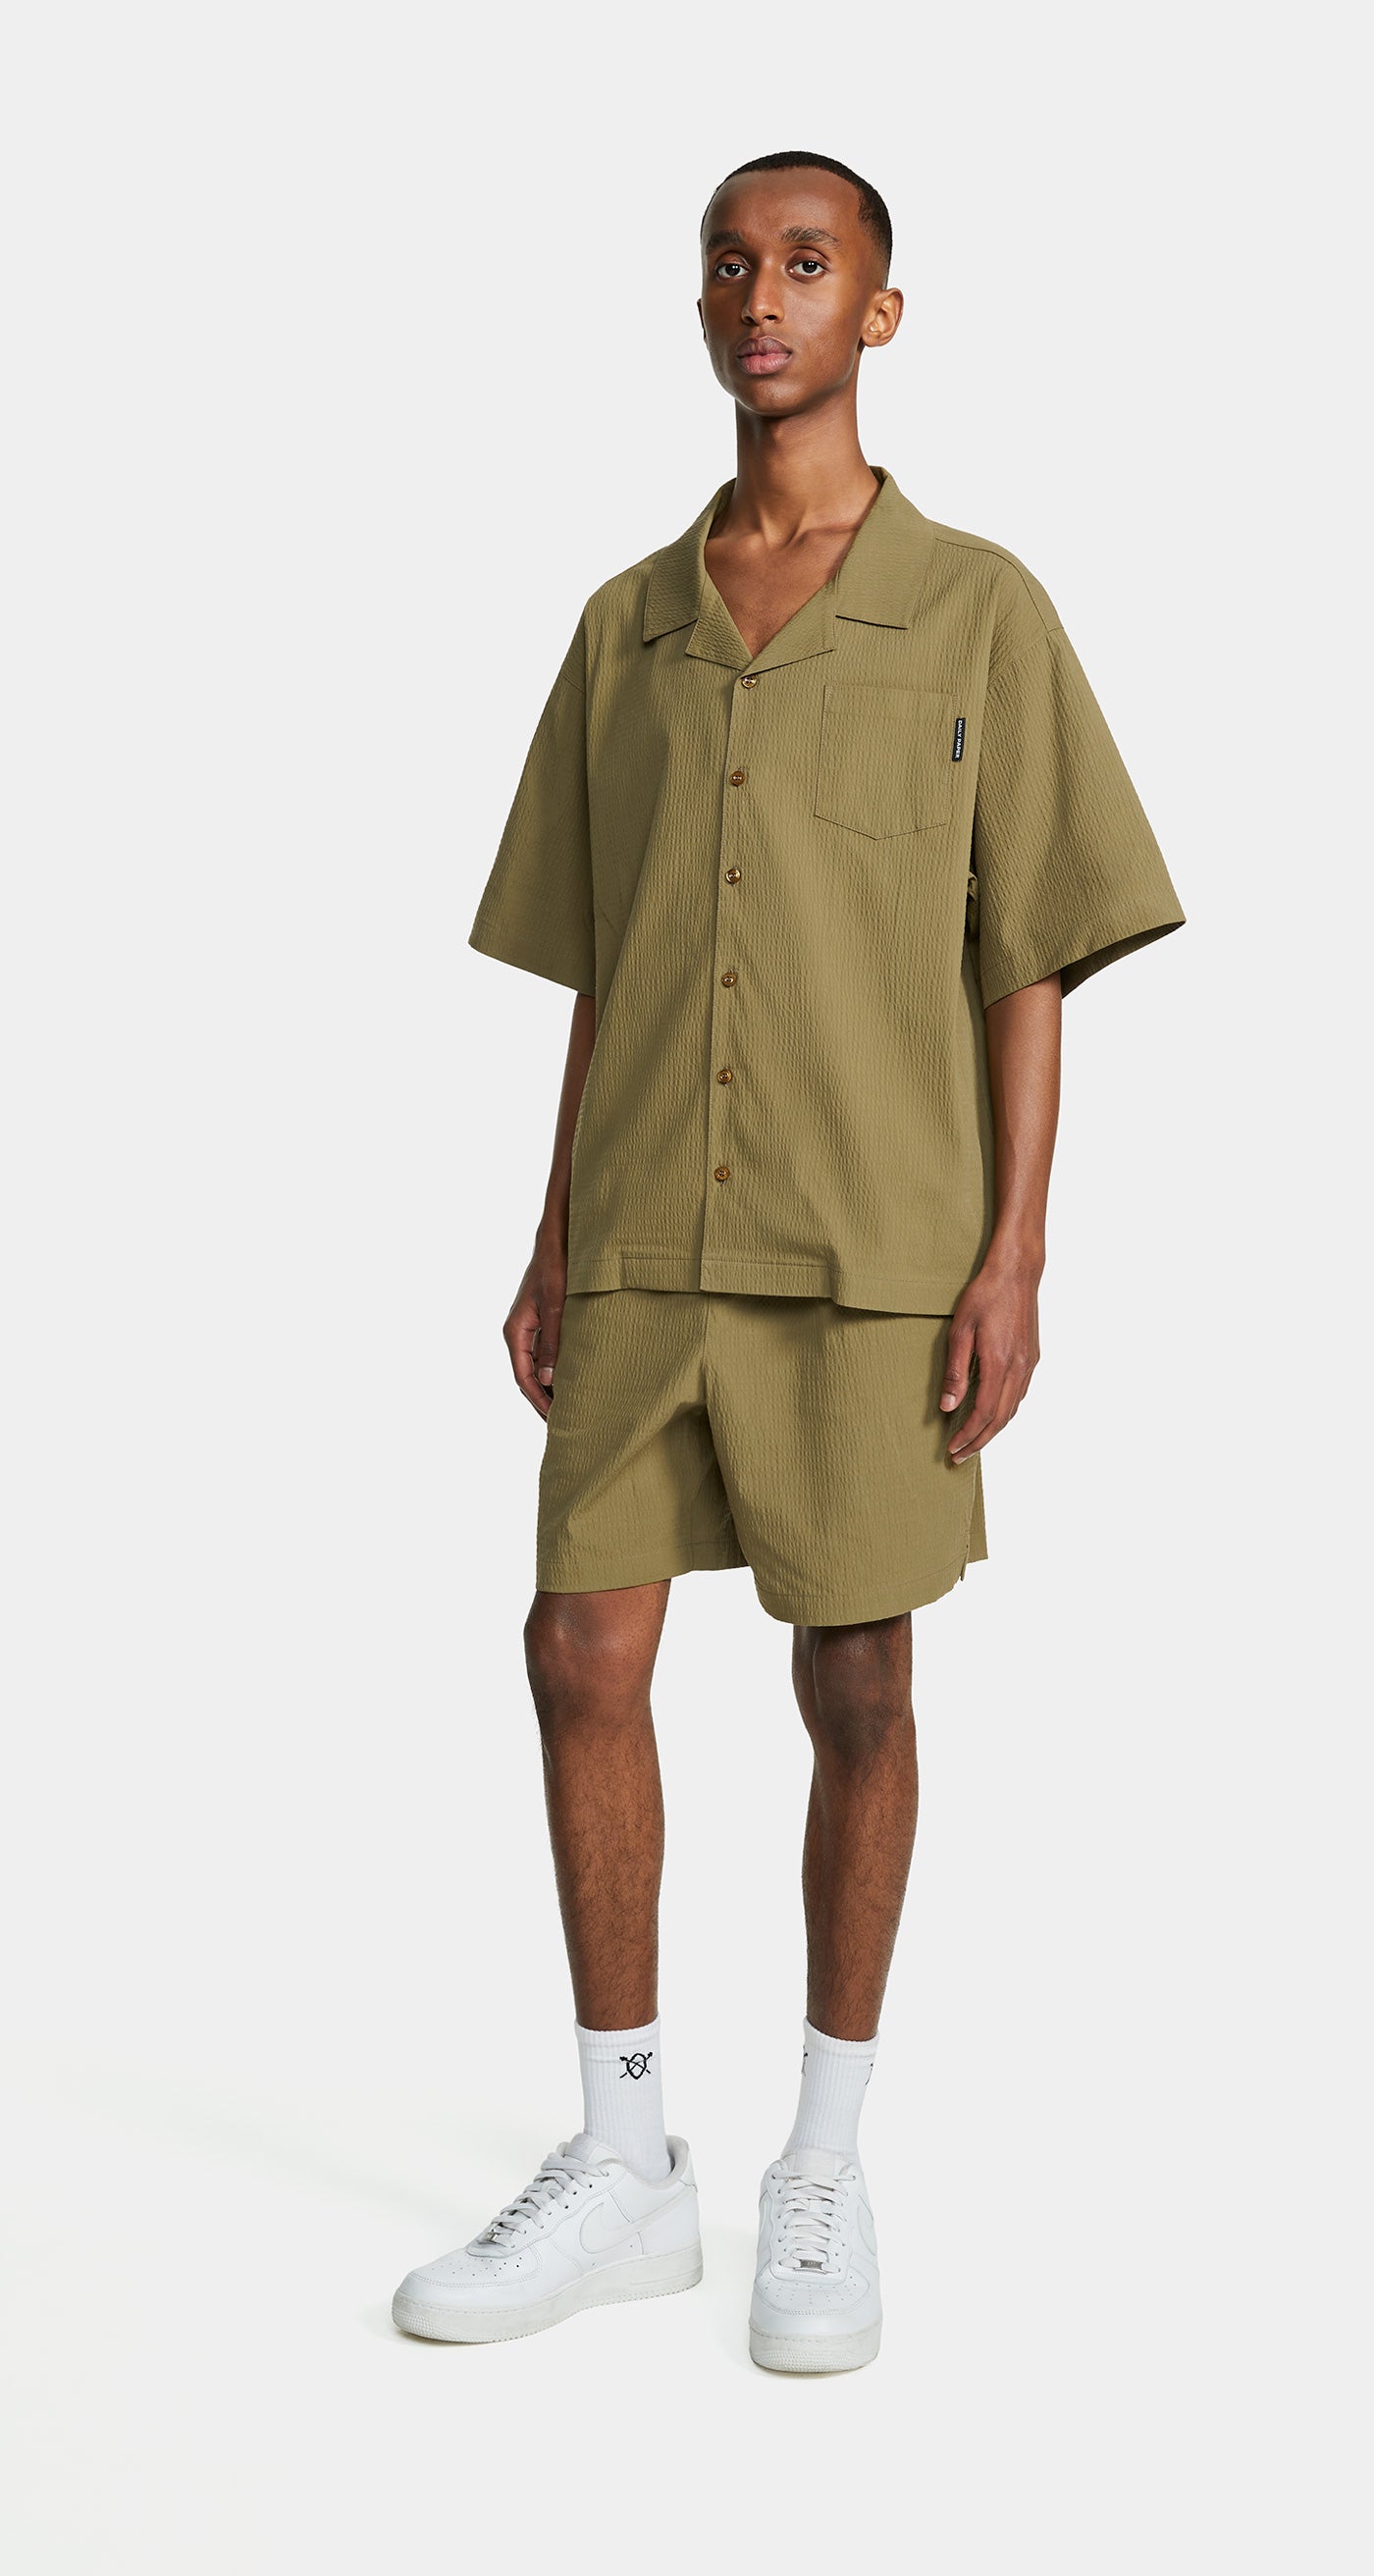 DP - Clover Green Pinira Shorts - Men - Front